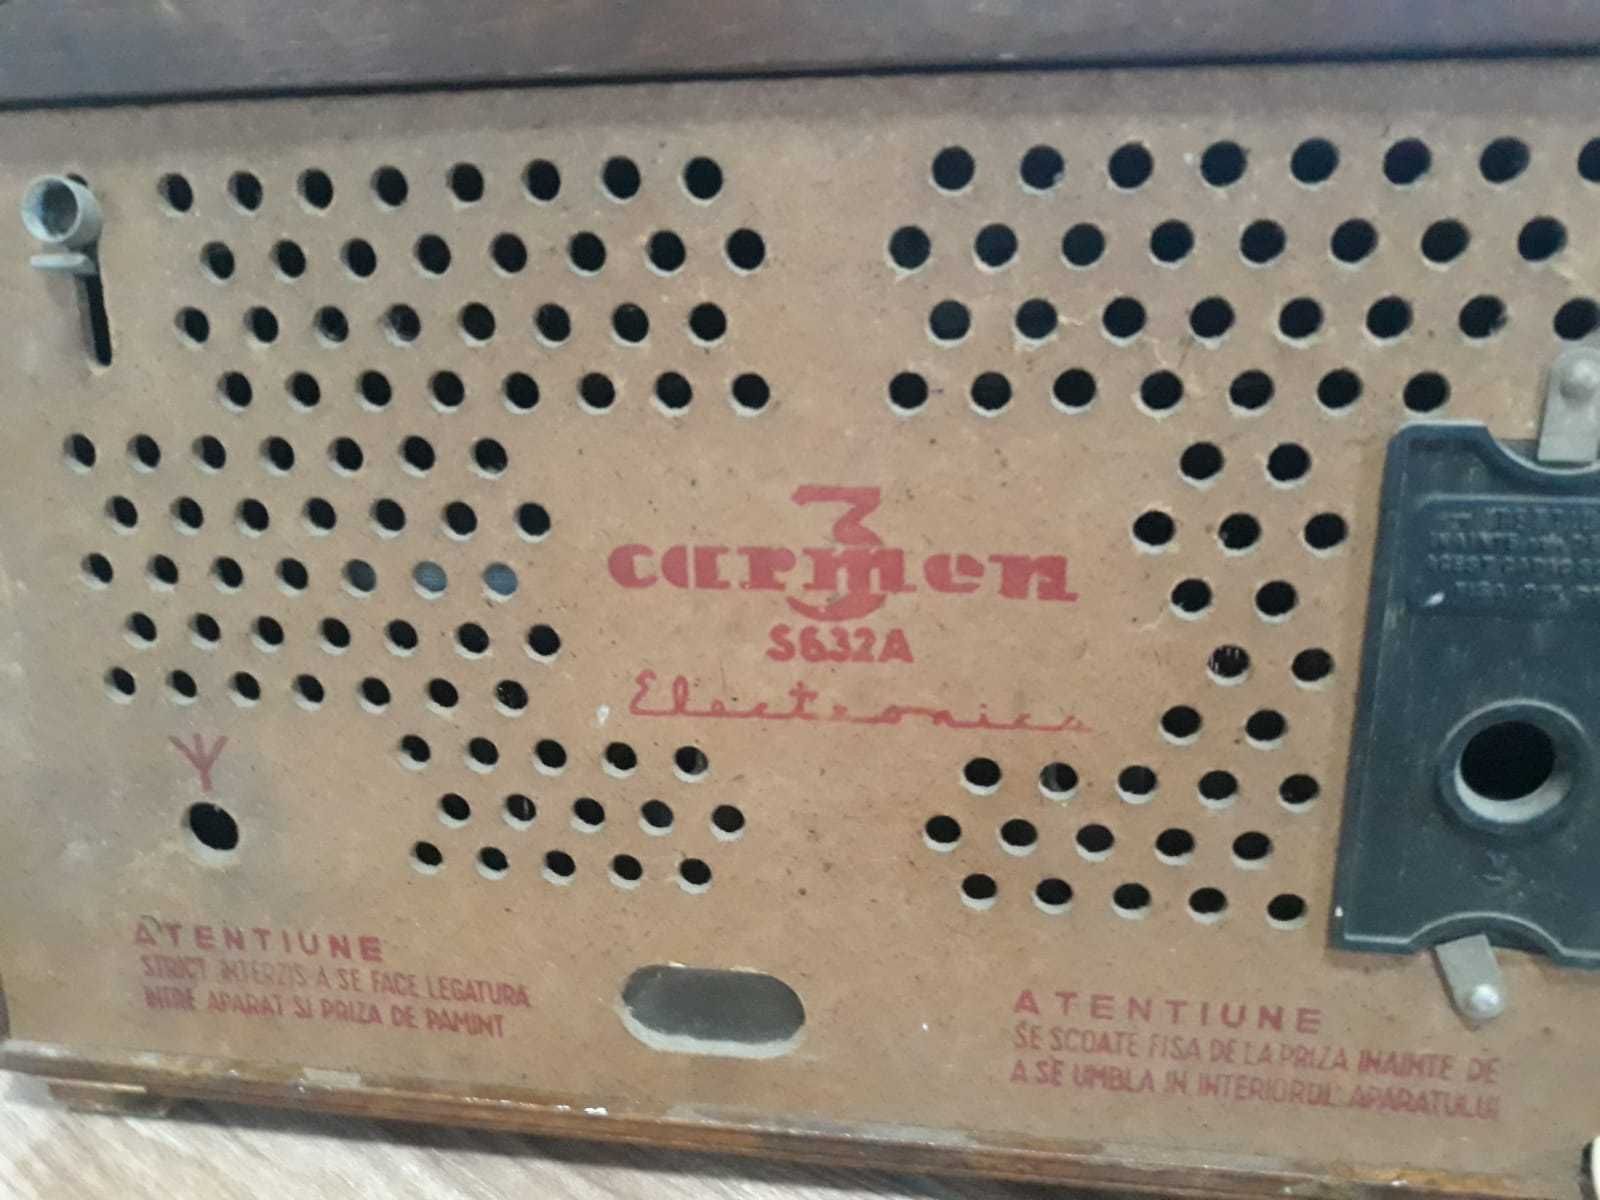 Aparat de radio cu lămpi Carmen 3 S632A